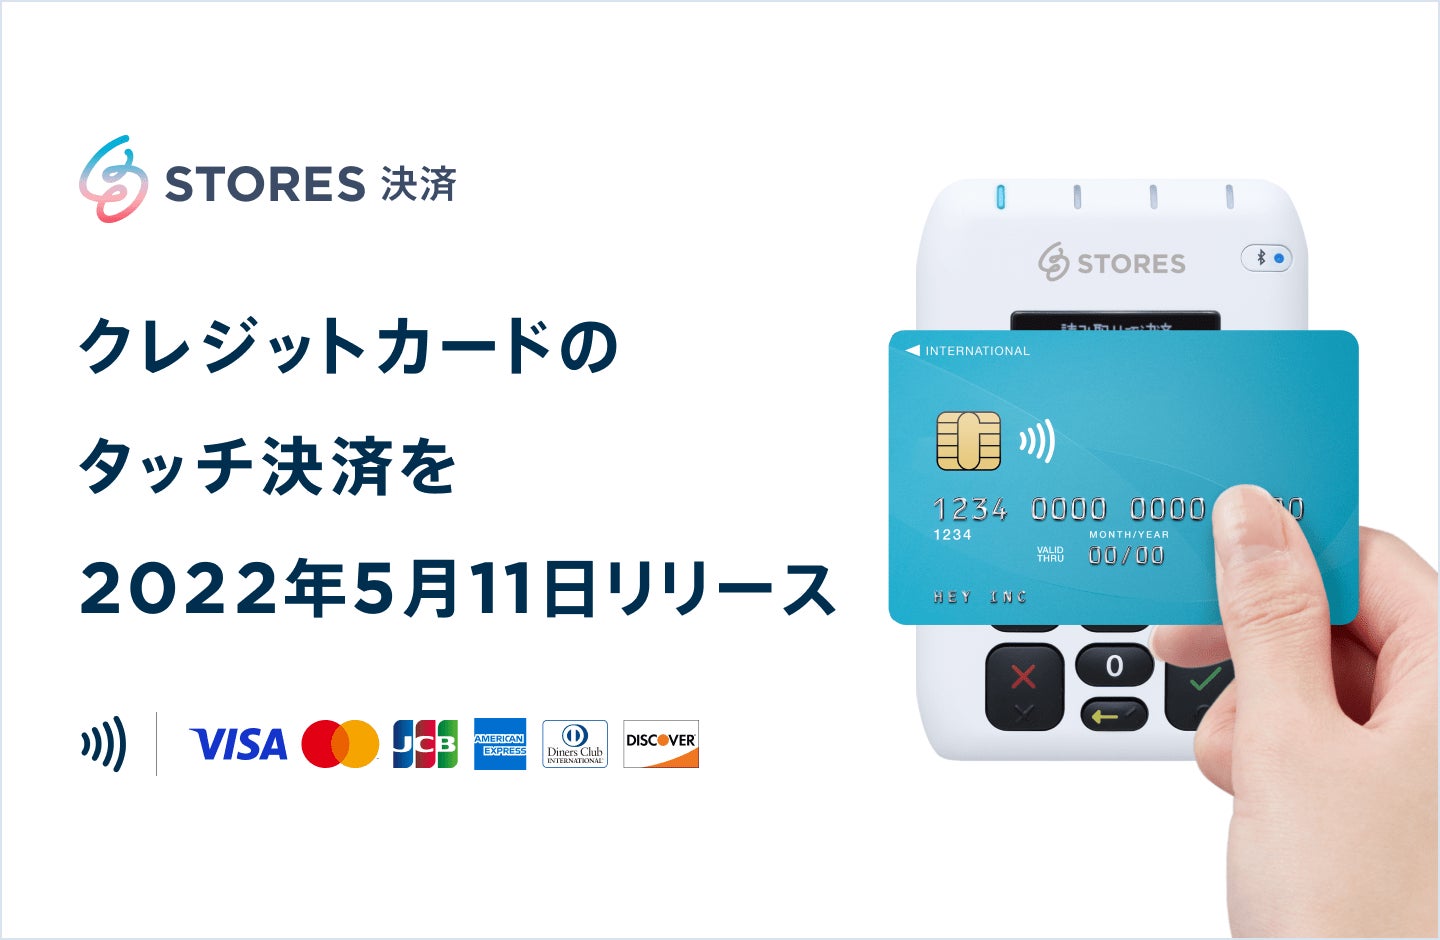 STORES 決済、クレジットカードのタッチ決済（NFC）に2022年5月11日より対応開始